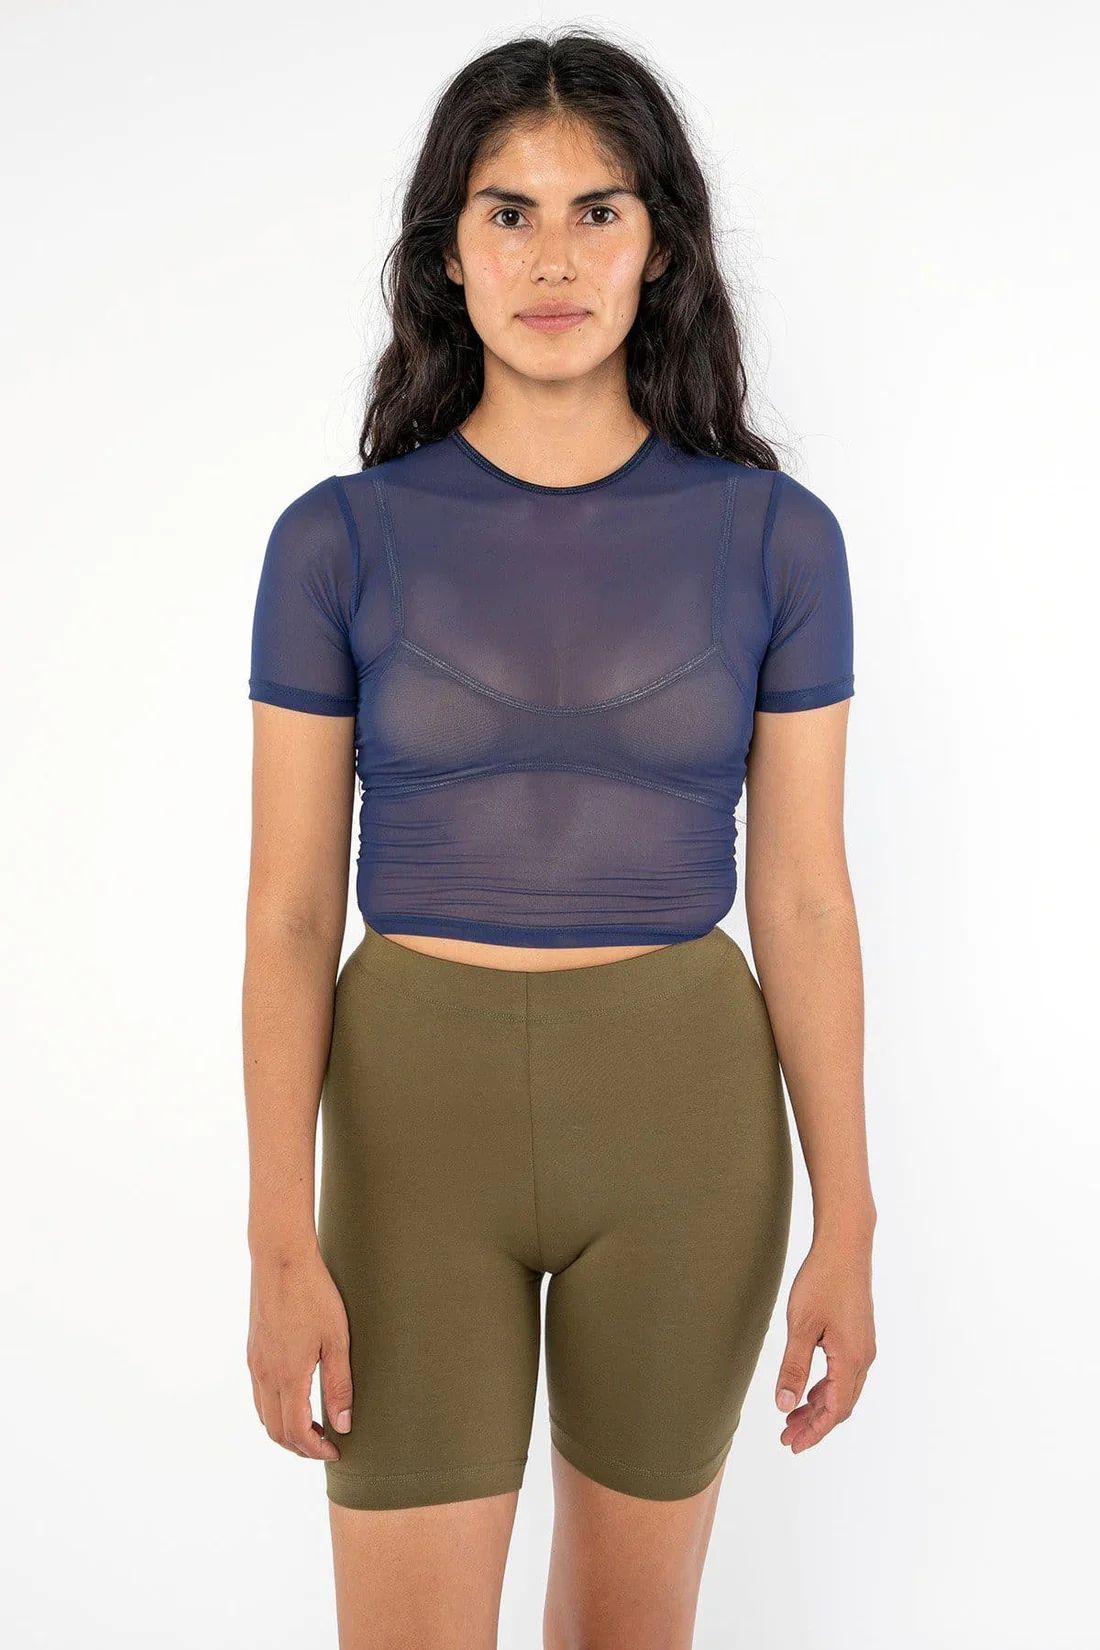 RNS078 - Micromesh Short Sleeve Crop Top Tee Shirt | Los Angeles Apparel